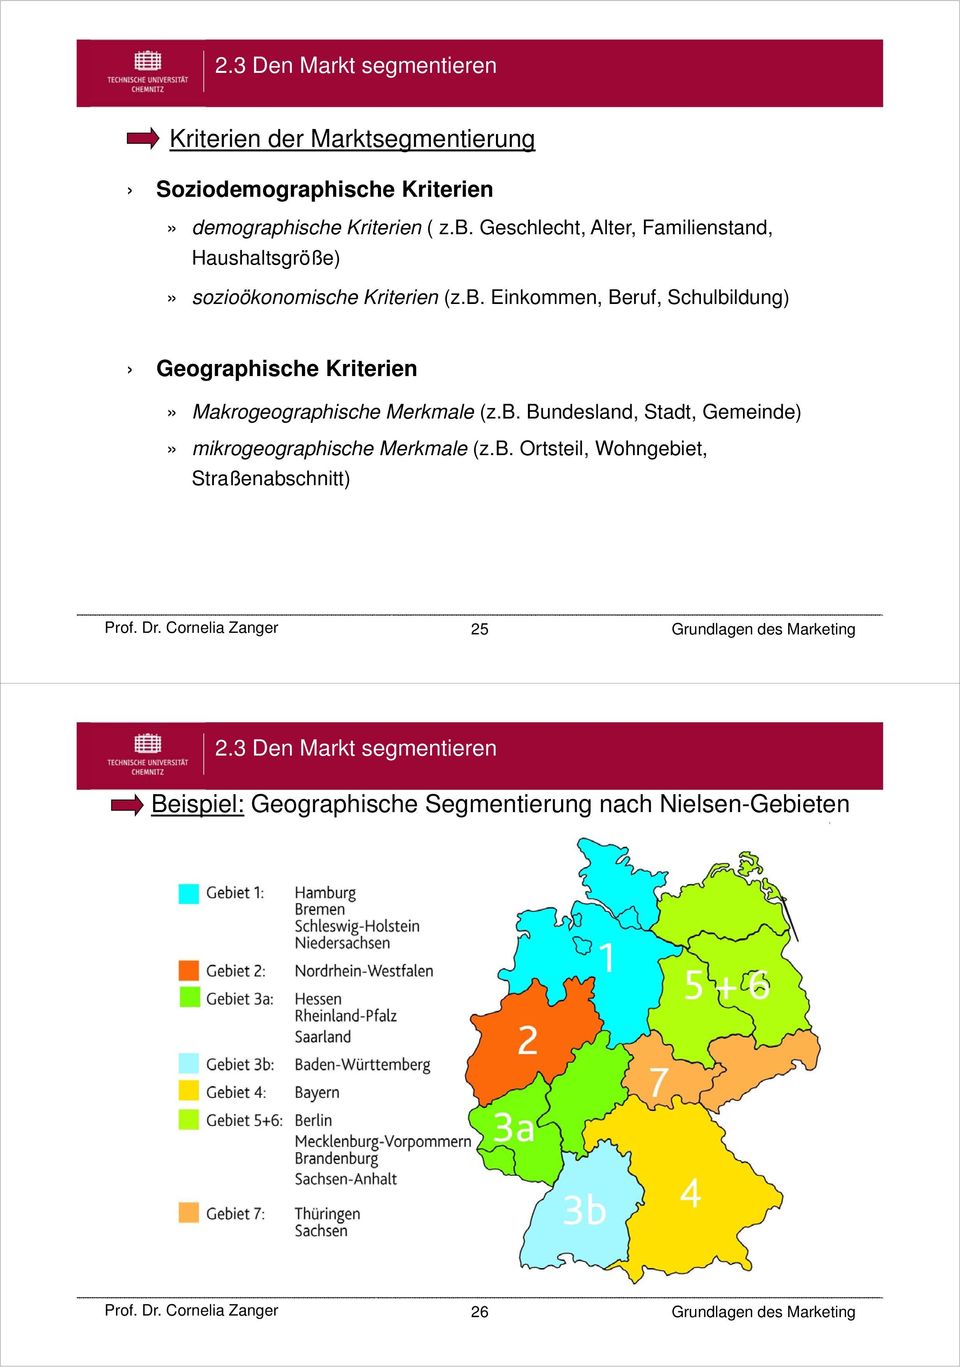 Einkommen, Beruf, Schulbildung) Geographische Kriterien» Makrogeographische Merkmale (z.b. Bundesland, Stadt, Gemeinde)» mikrogeographische Merkmale (z.